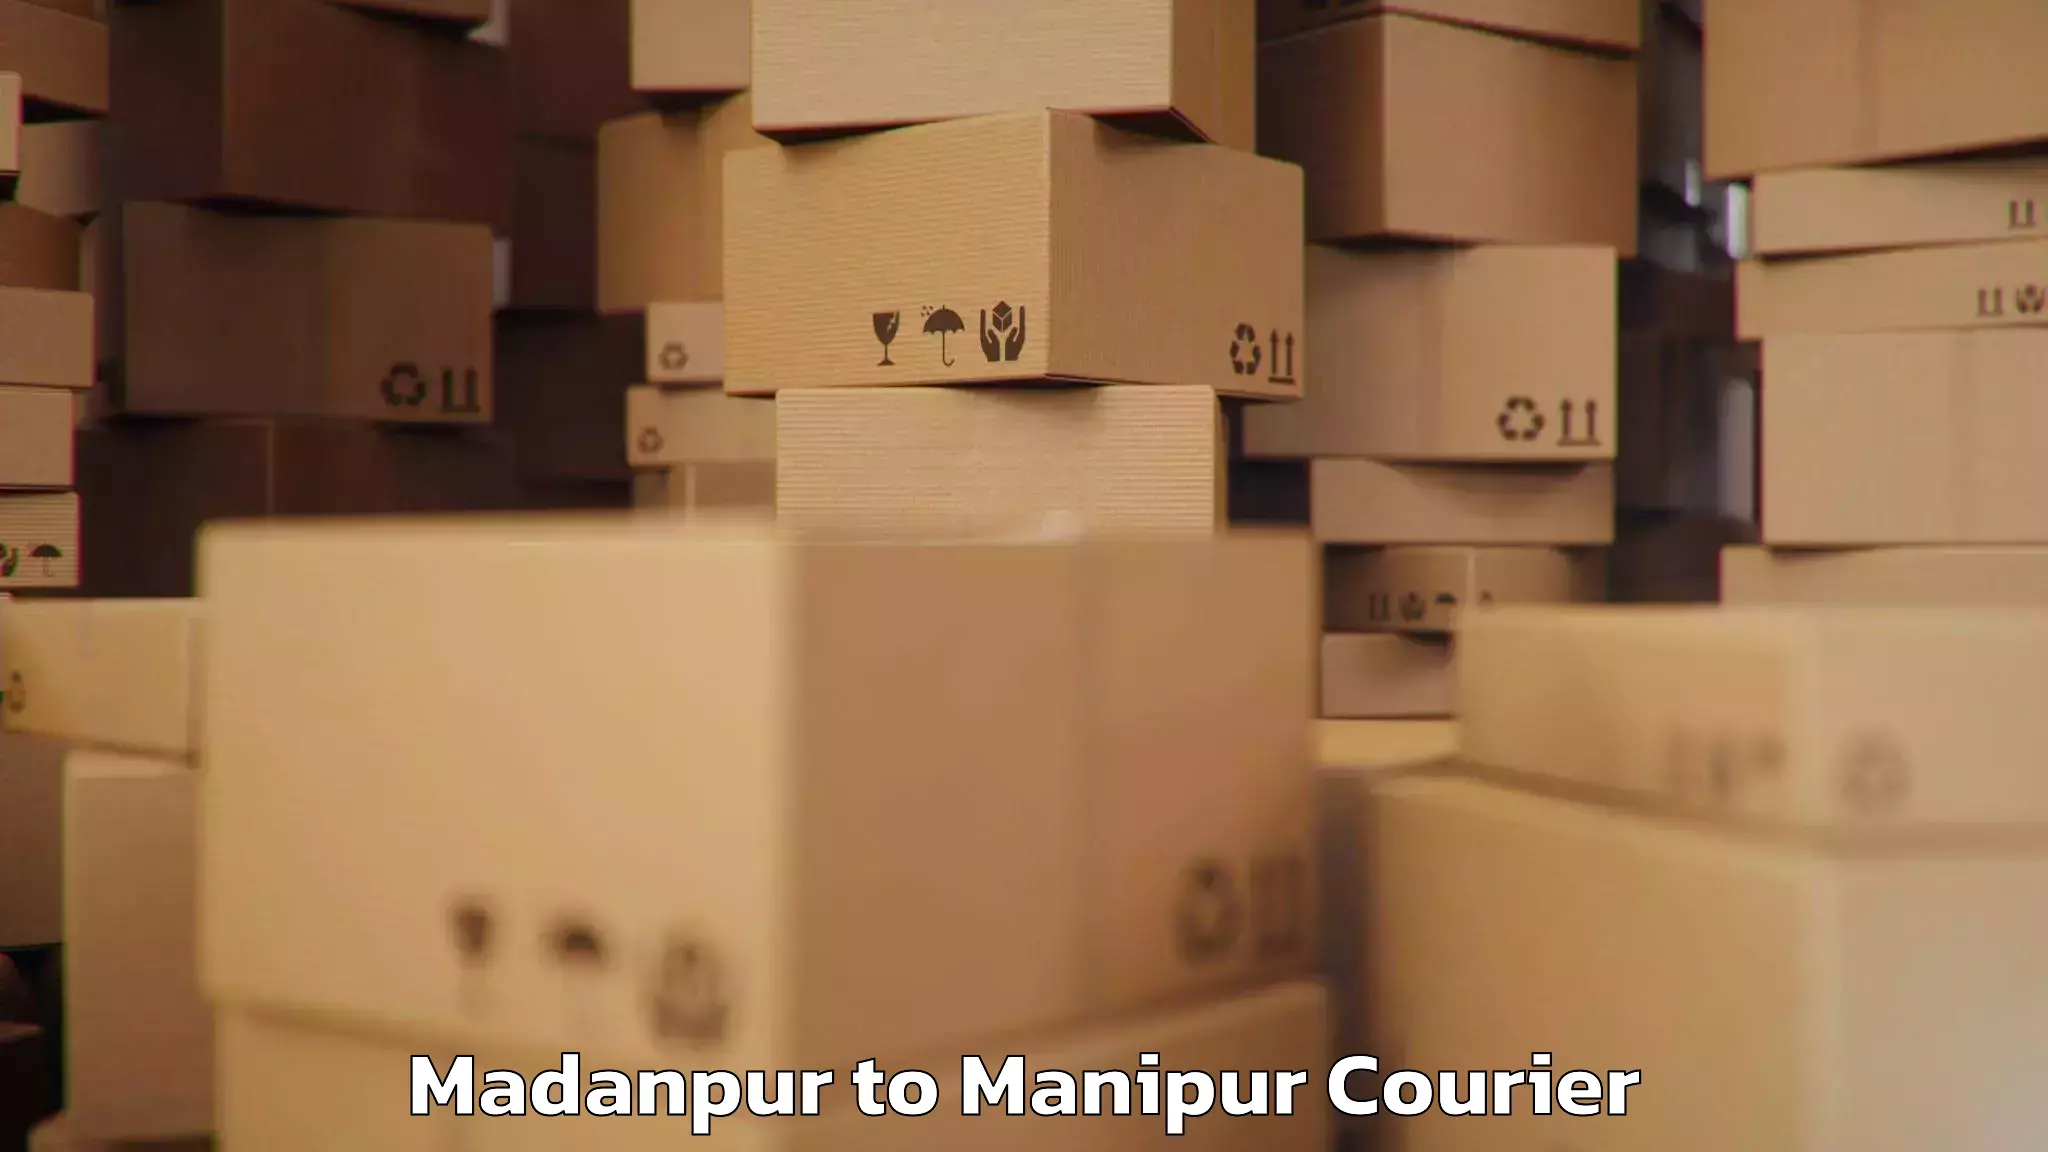 Baggage transport scheduler Madanpur to Chandel